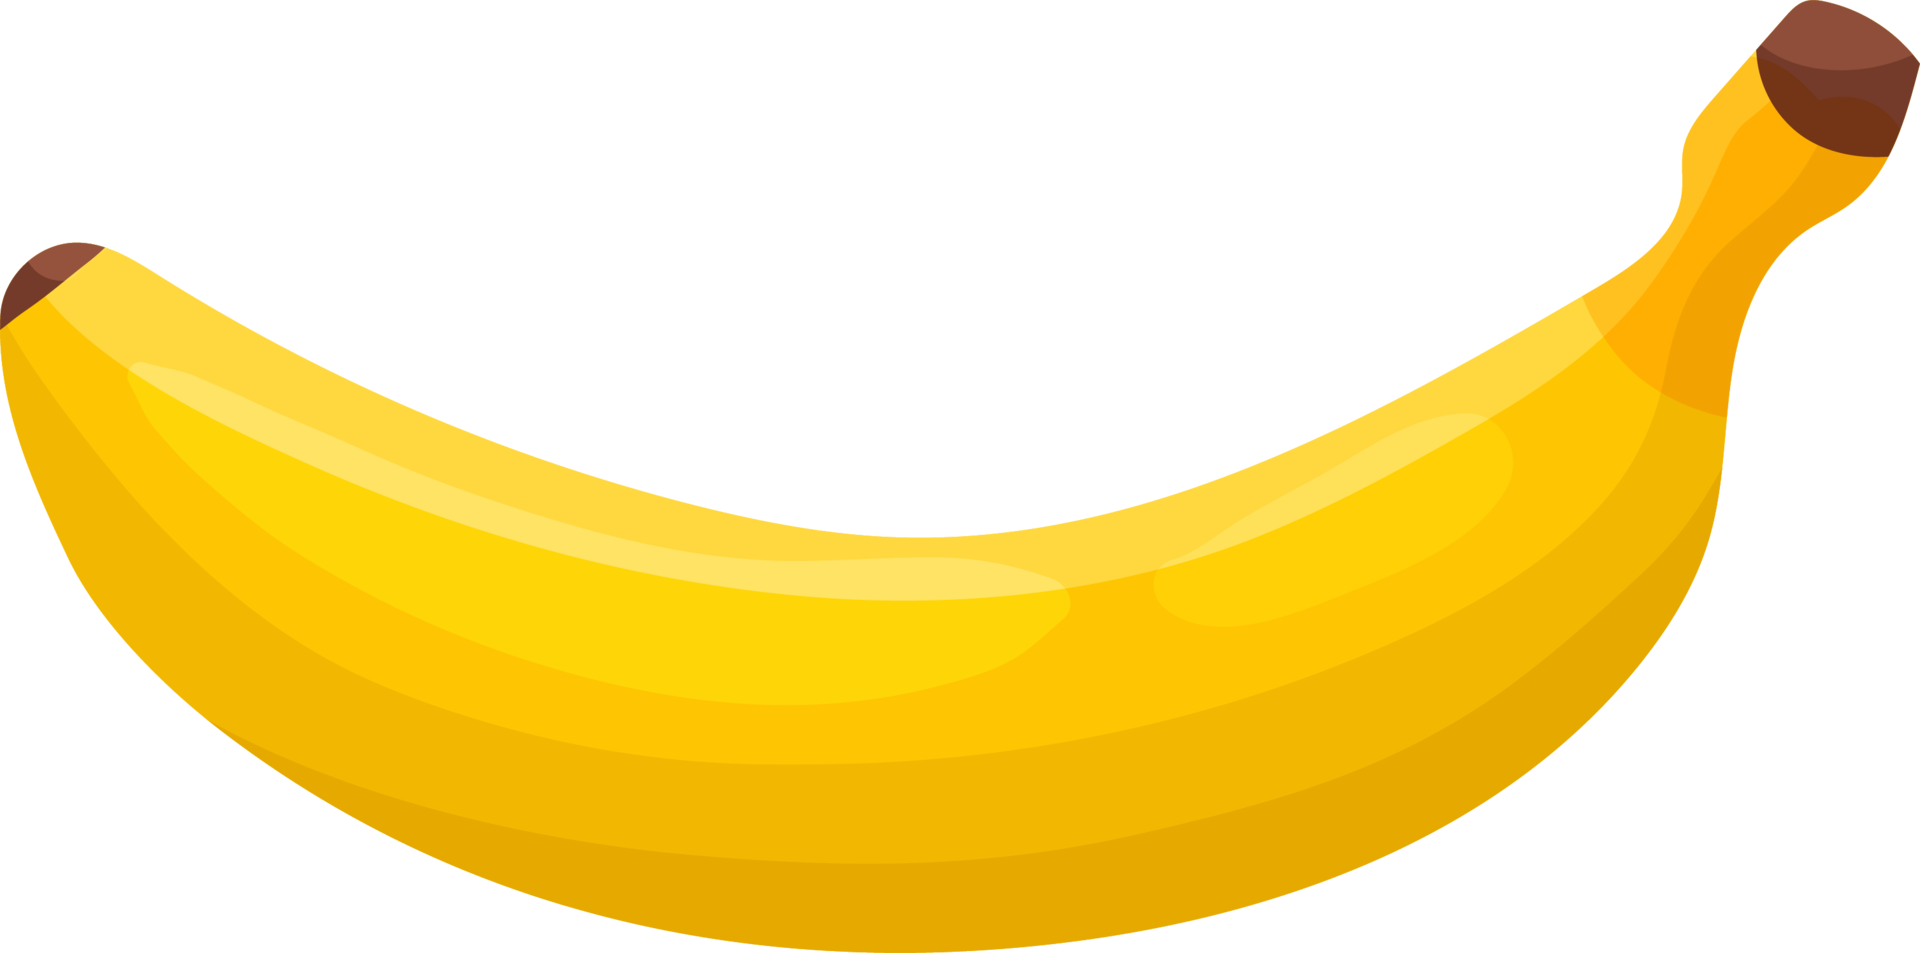 banaan is een gele vrucht. png